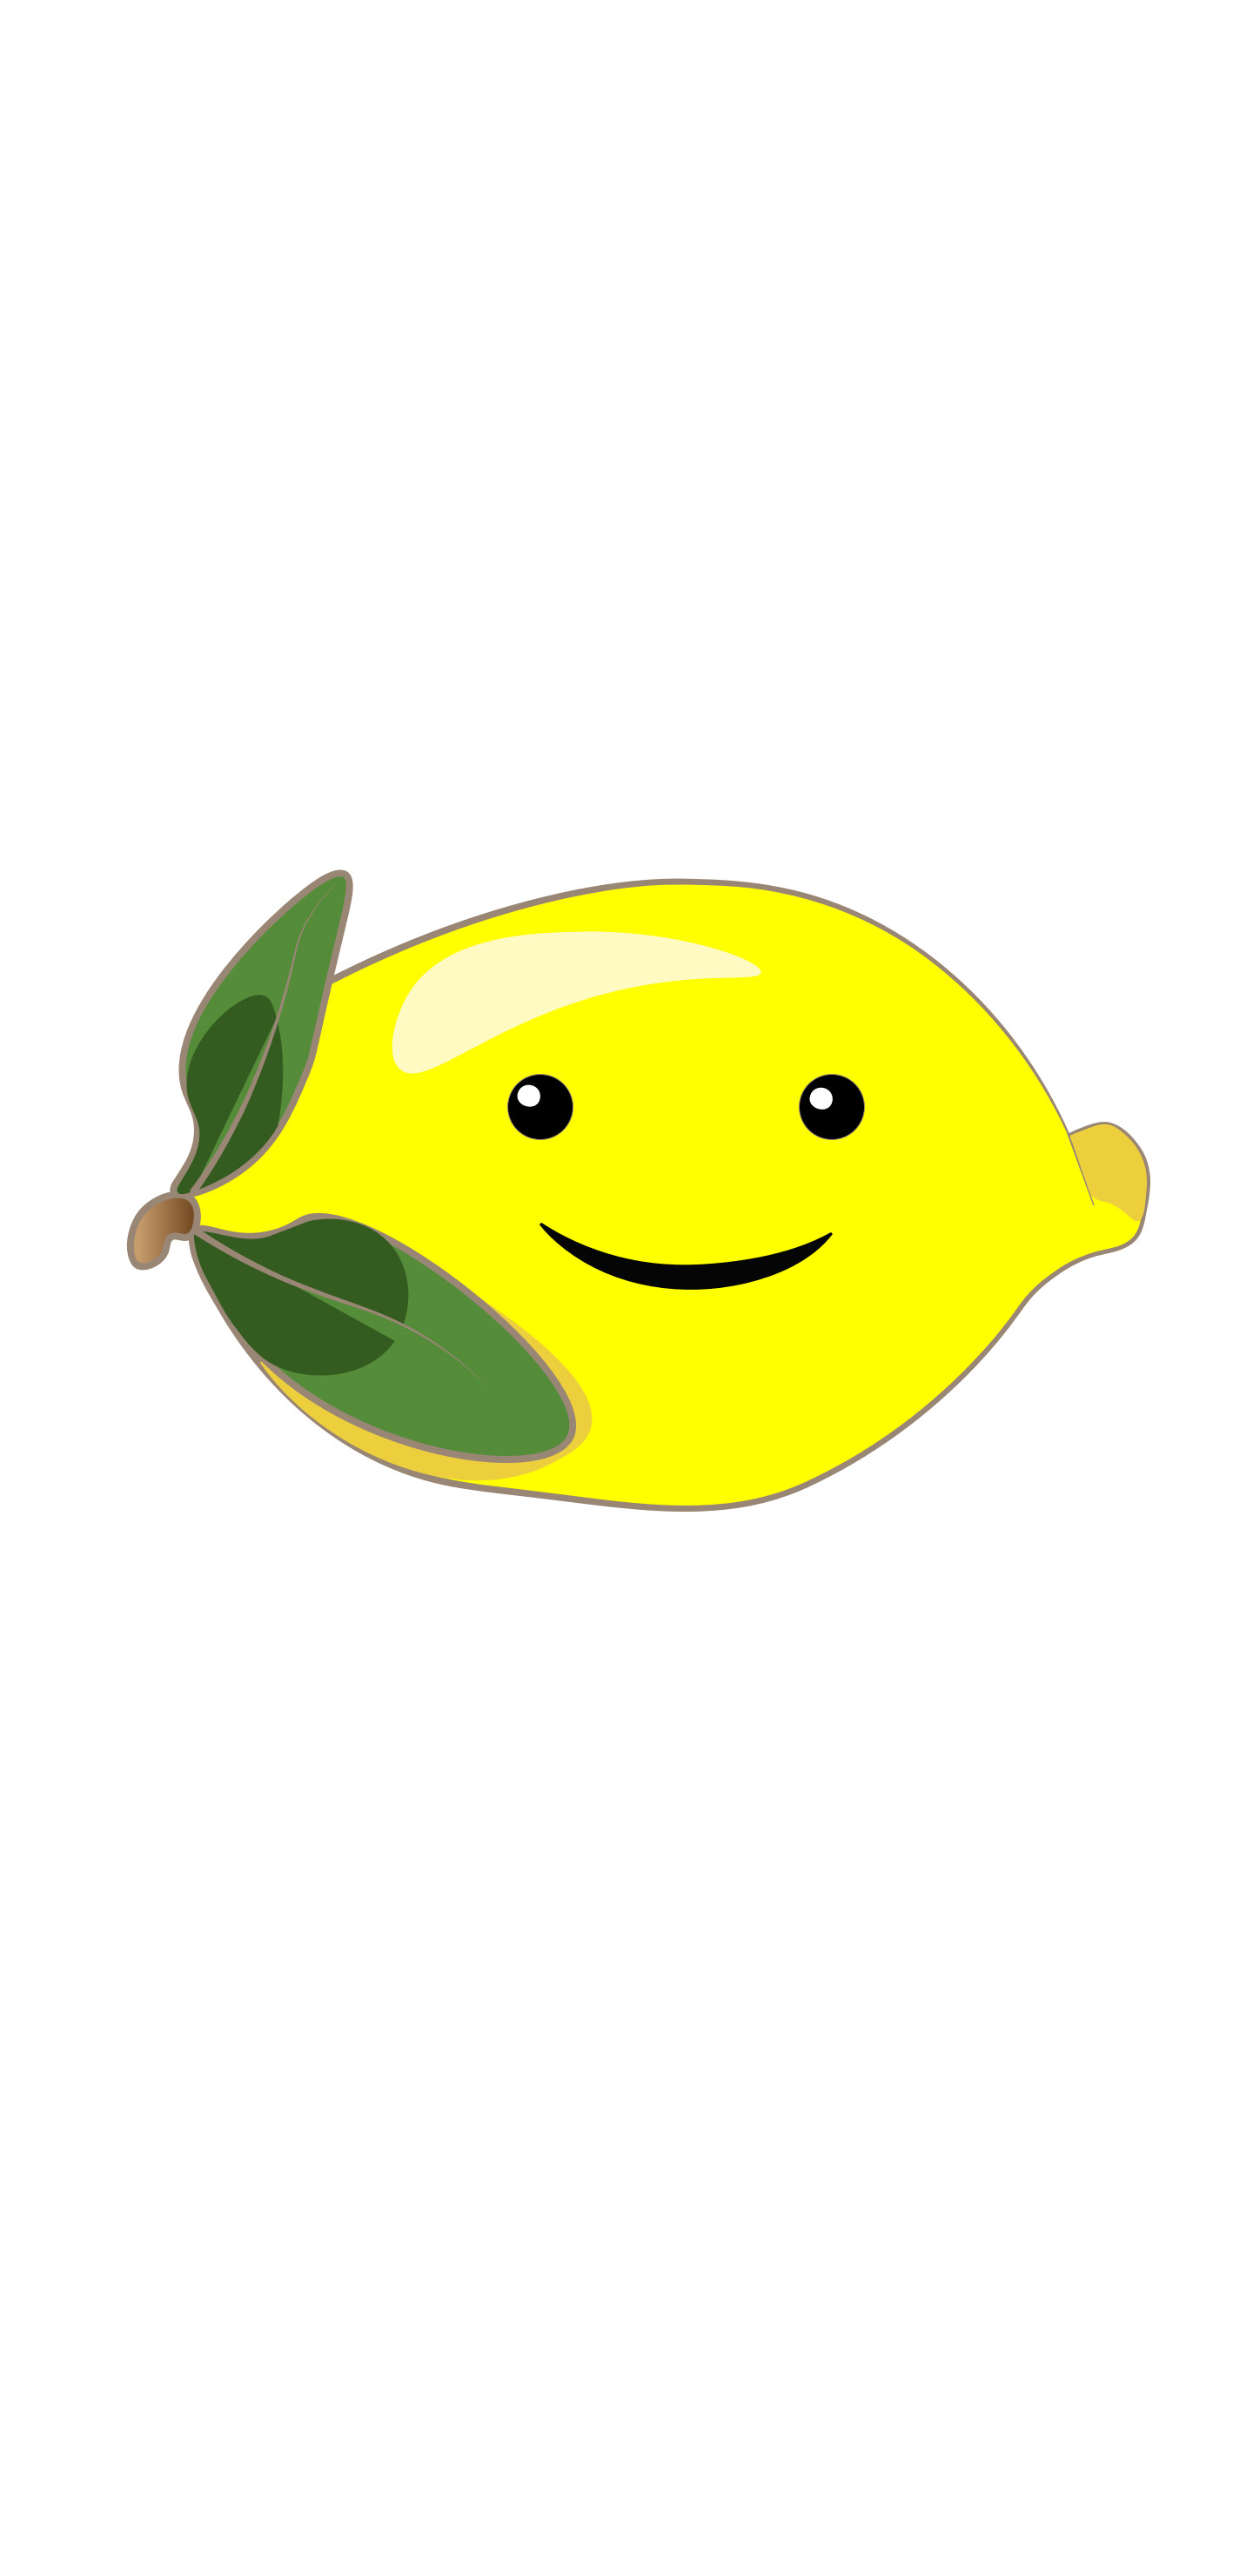 ArtStation - lemon logo